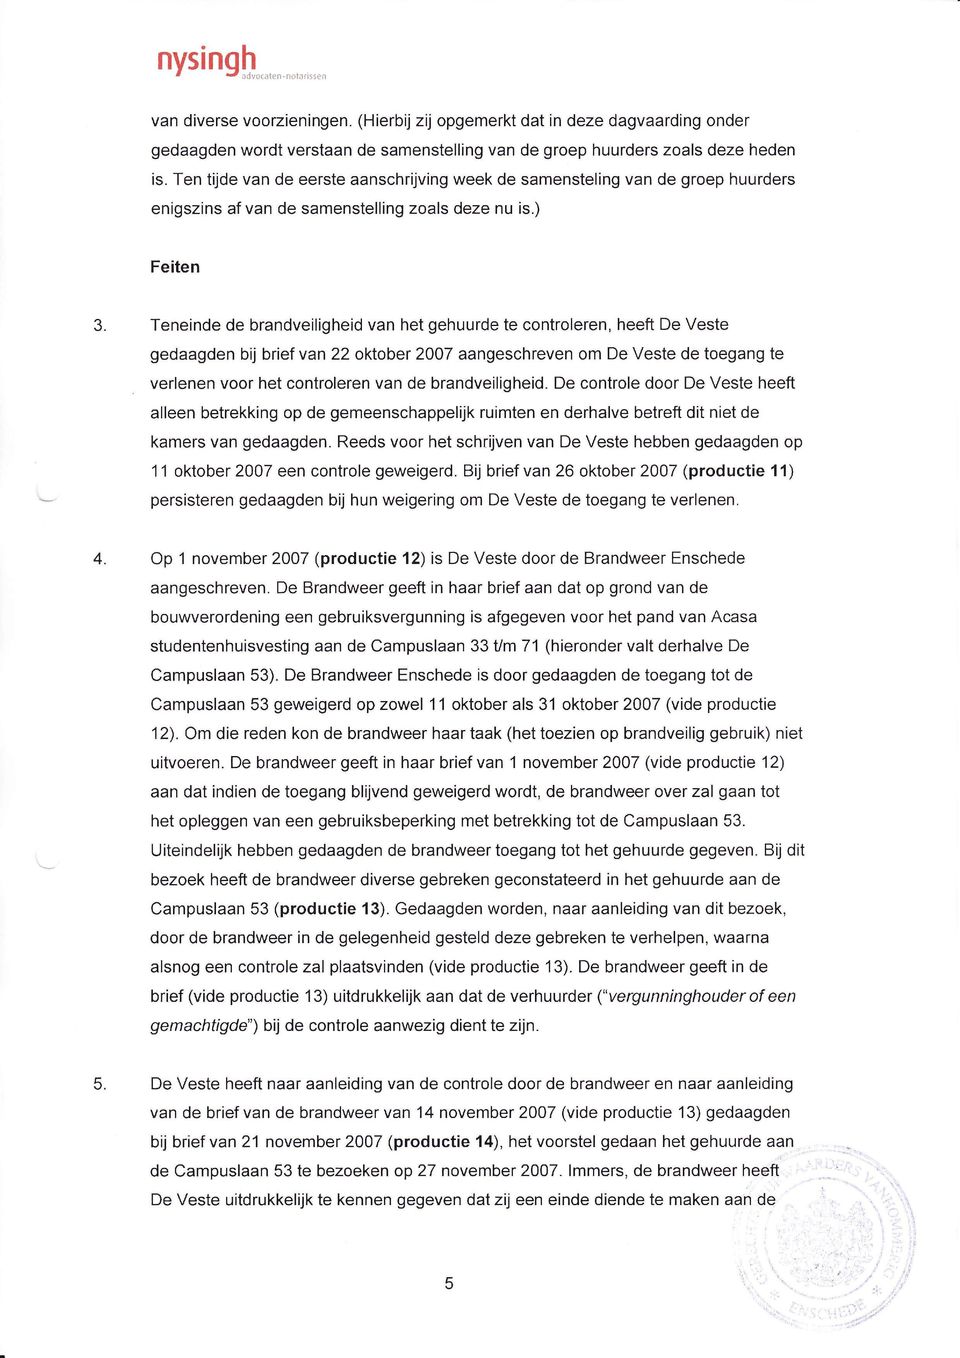 Teneinde de brandveiligheid van het gehuurde te controleren, heeft De Veste gedaagden bij brief van 22 oktober 2007 aangeschreven om De Veste de toegang te verlenen voor het controleren van de